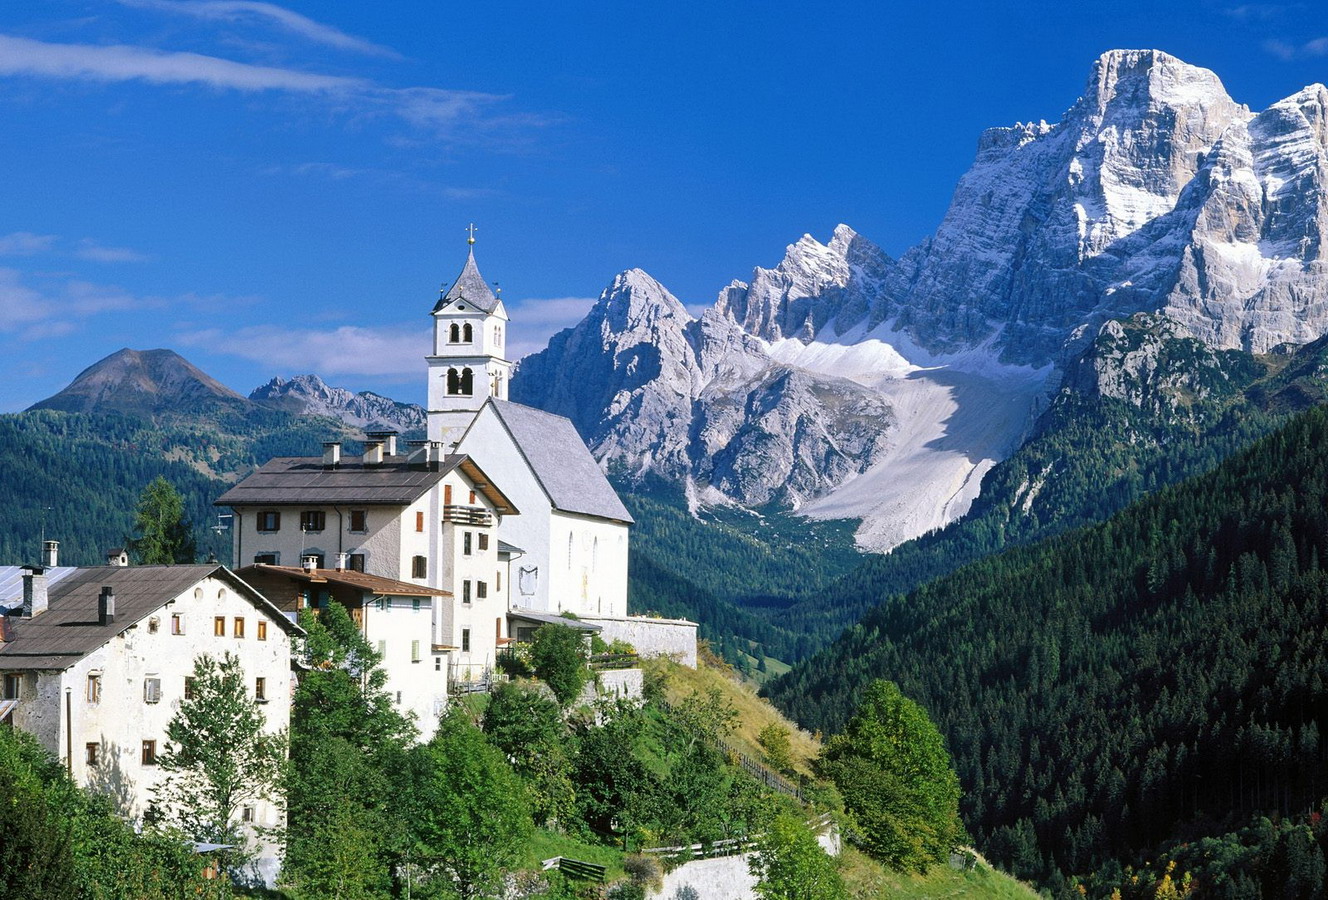 Thụy Sĩ: Biết đến Thụy Sĩ là biết đến một đất nước yên bình, giàu sức sống, với những ngọn núi cao và một bầu trời xanh sâu. Hãy tận hưởng những hình ảnh tuyệt đẹp của Thụy Sĩ. Hãy để những bức ảnh đưa bạn đến với vùng đất đầy cảm hứng và sức sống này.